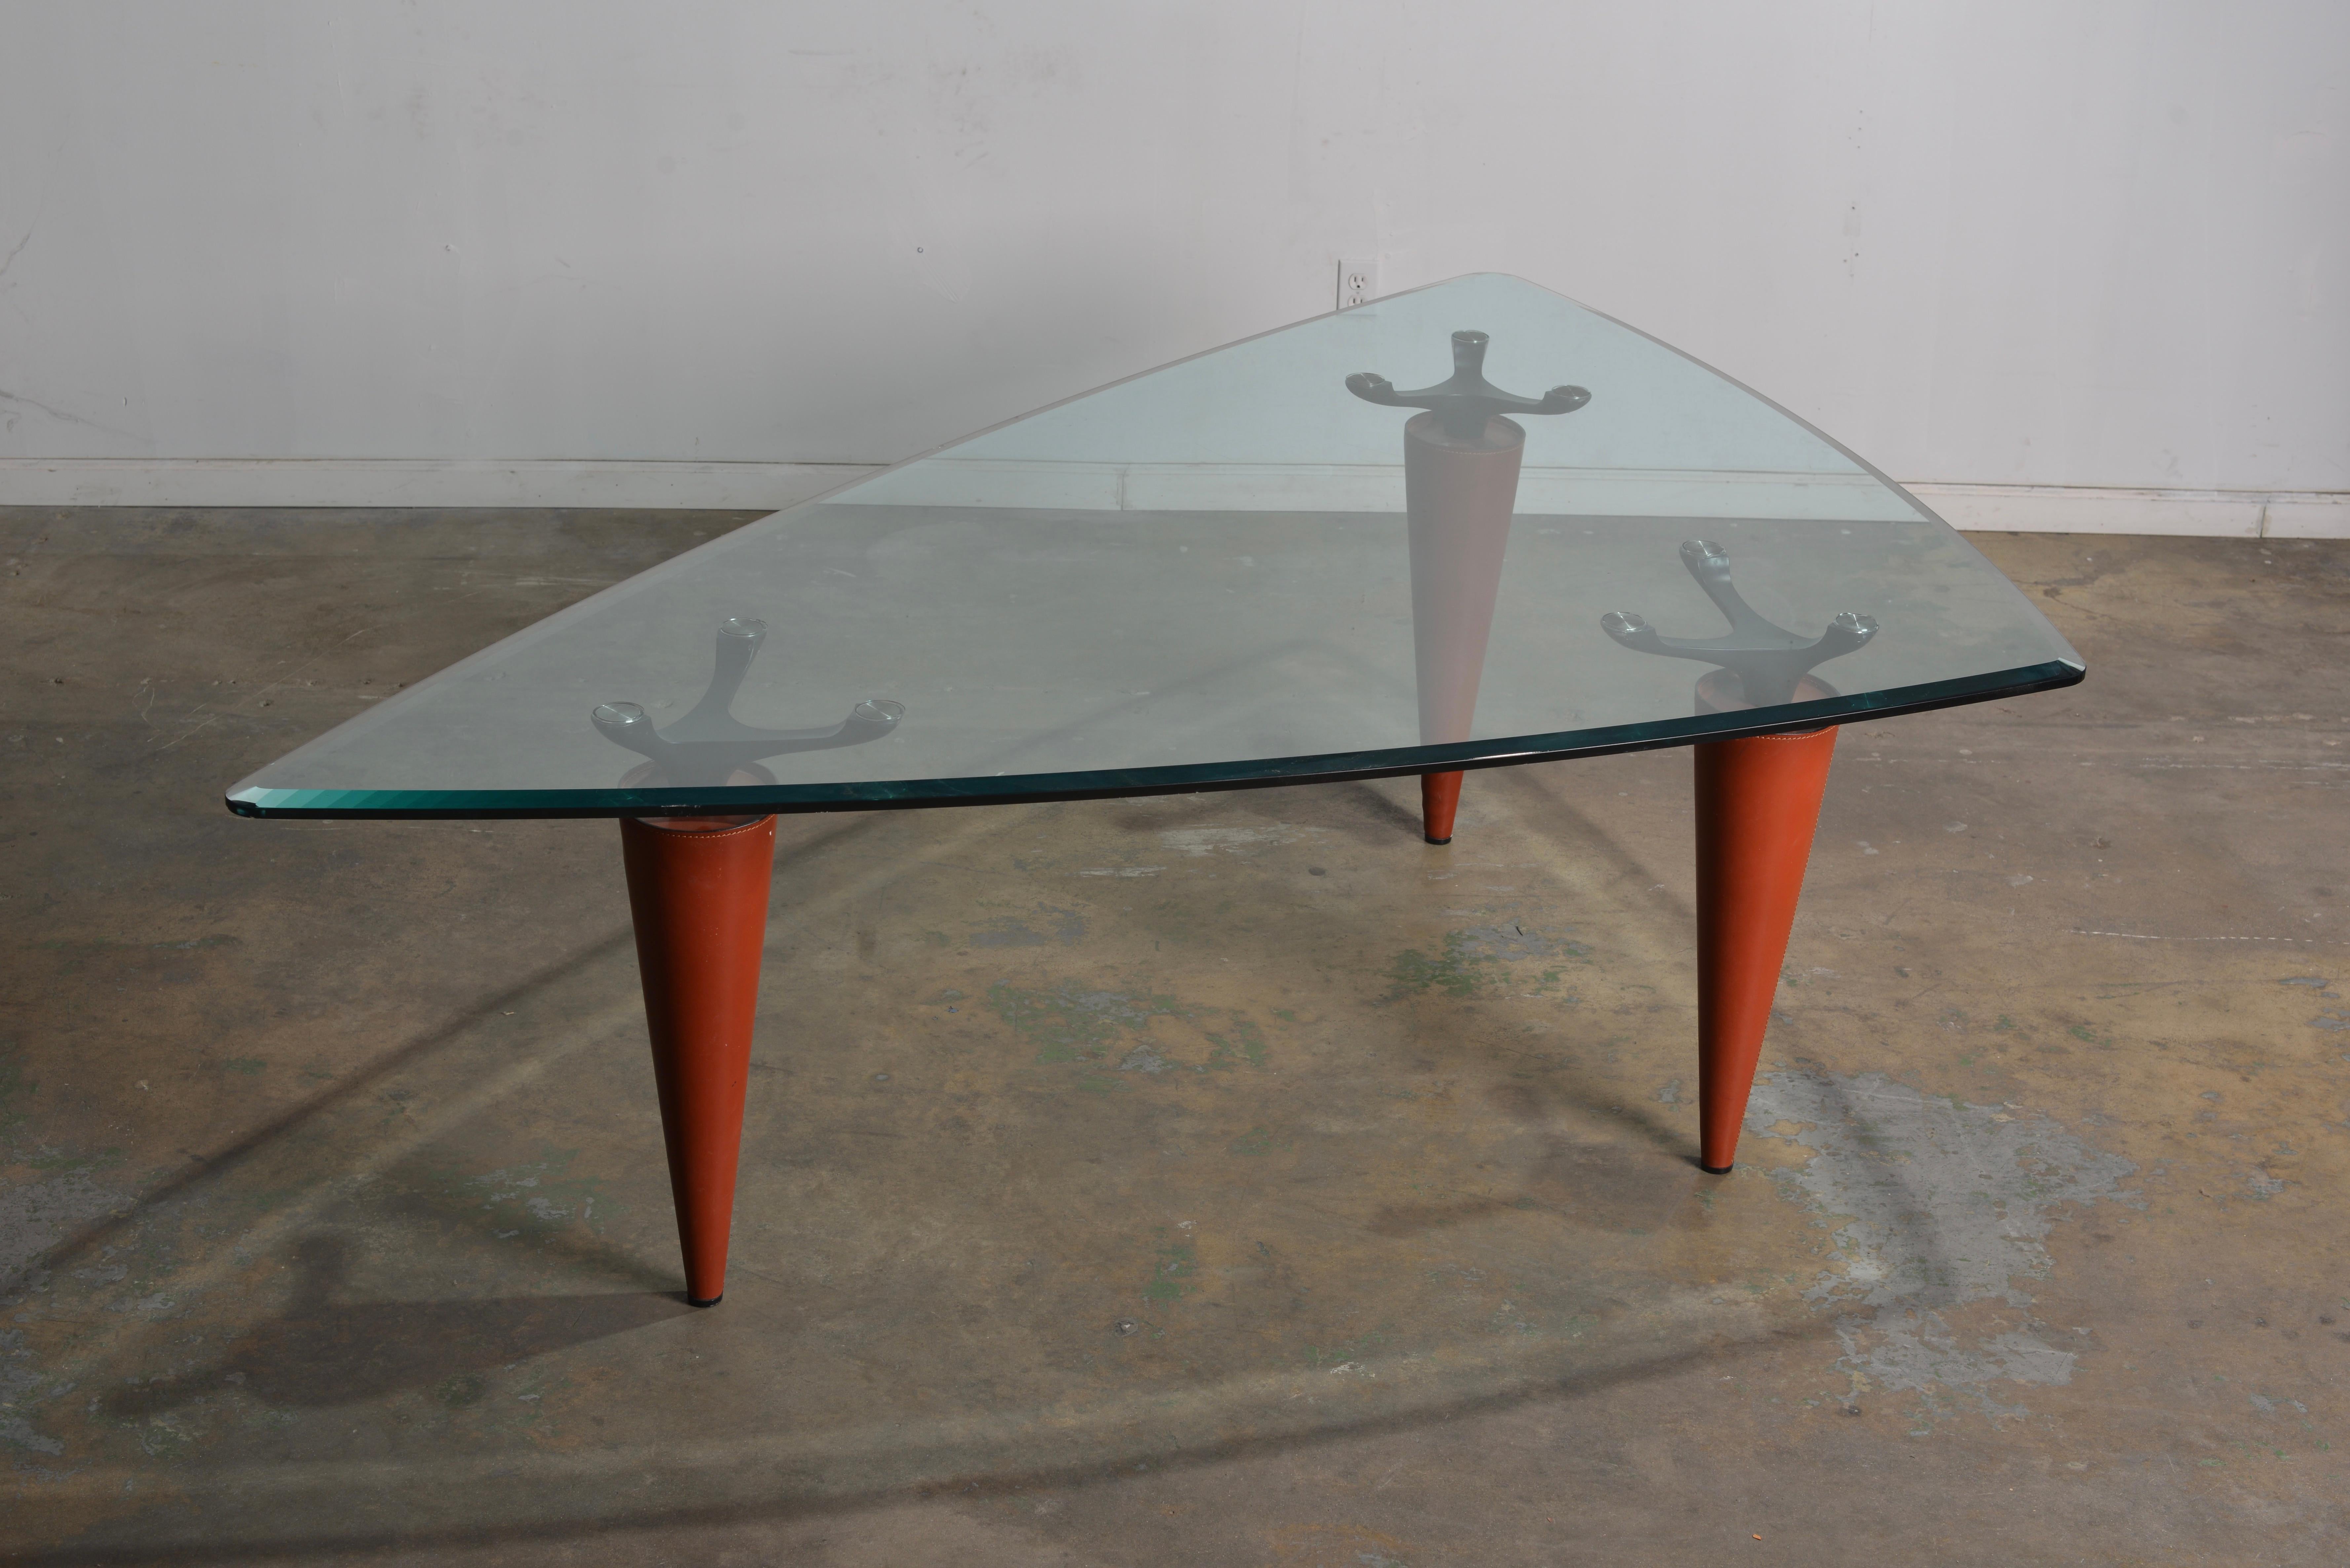  Isao Hosoe Oskar 705 Scalene Triangular Table by Cassina For Sale 12